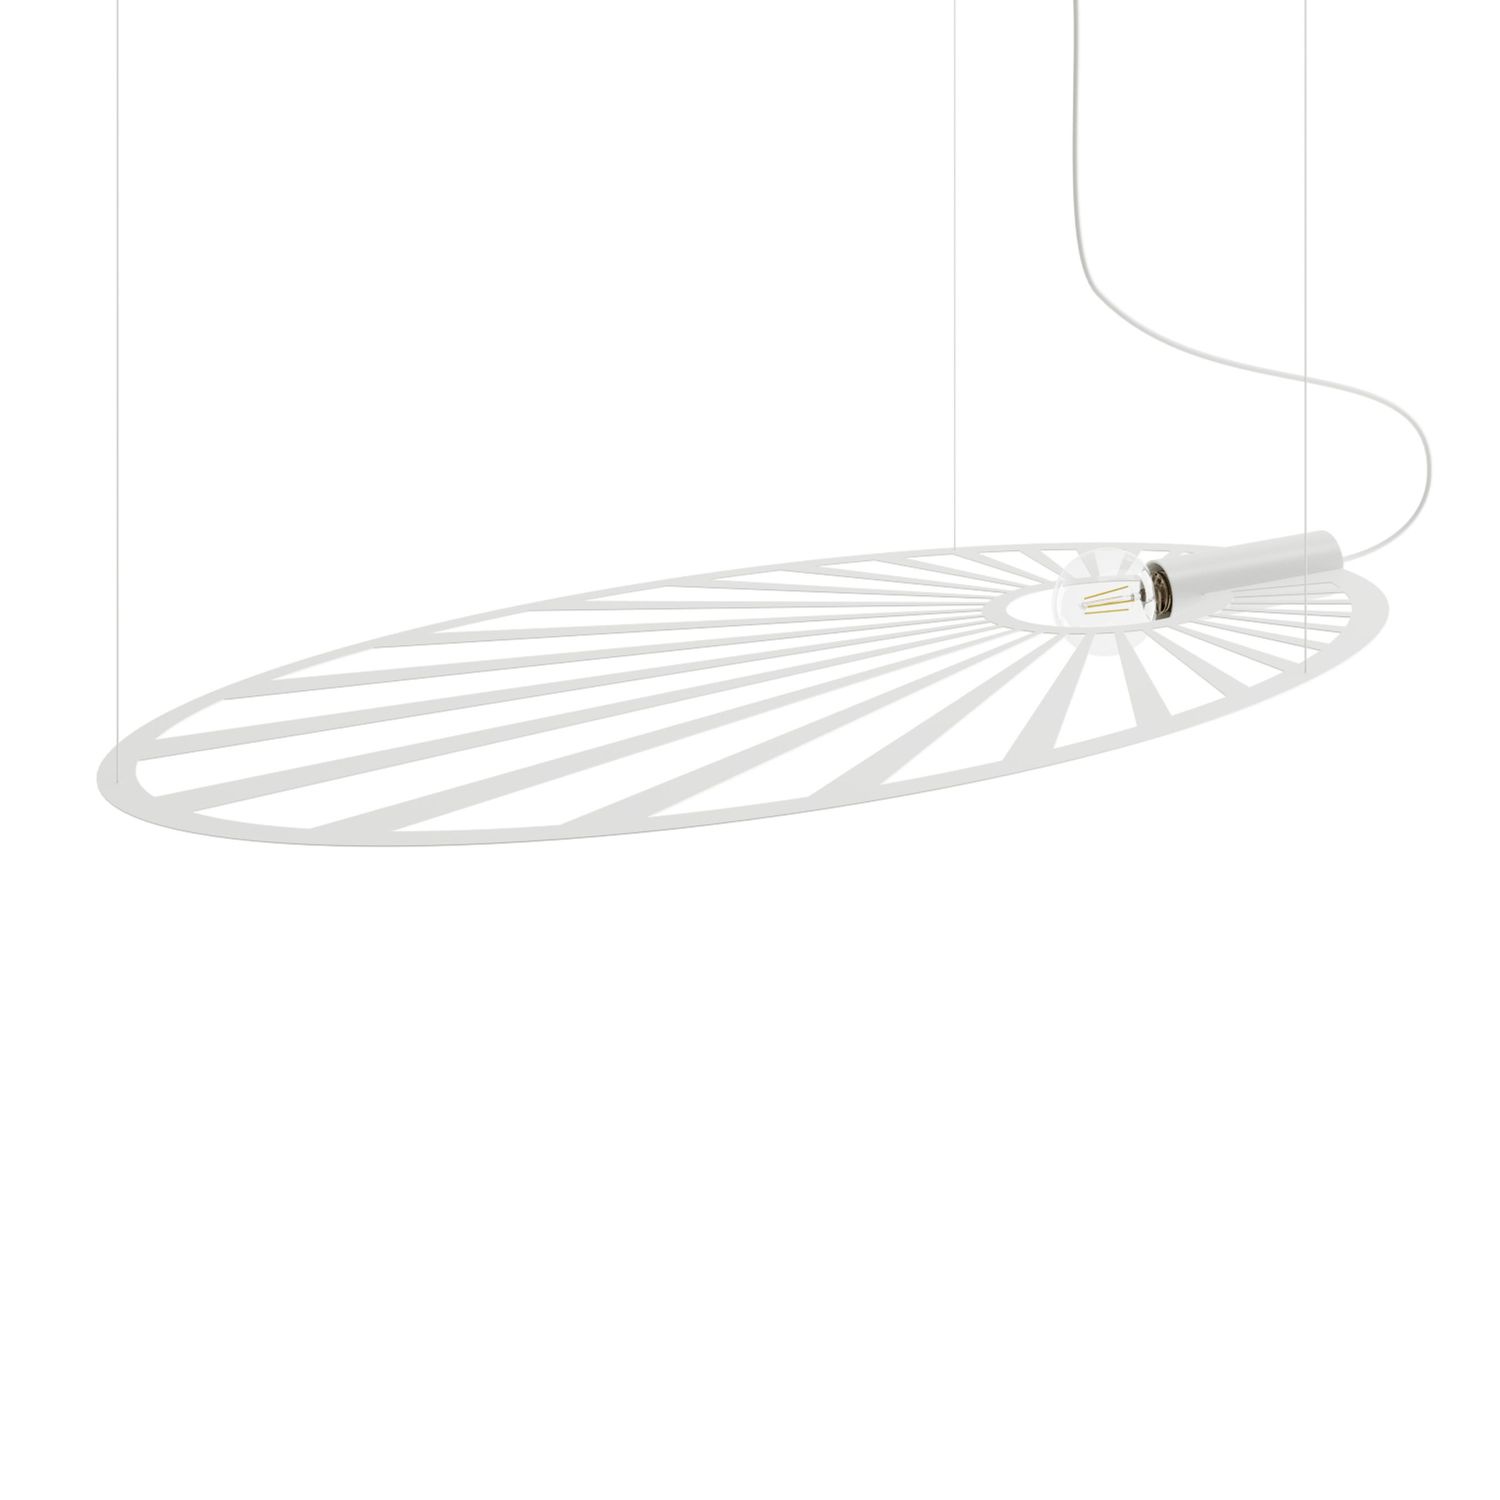 Hängelampe Weiß 110 cm lang oval Modern Design Metall E27